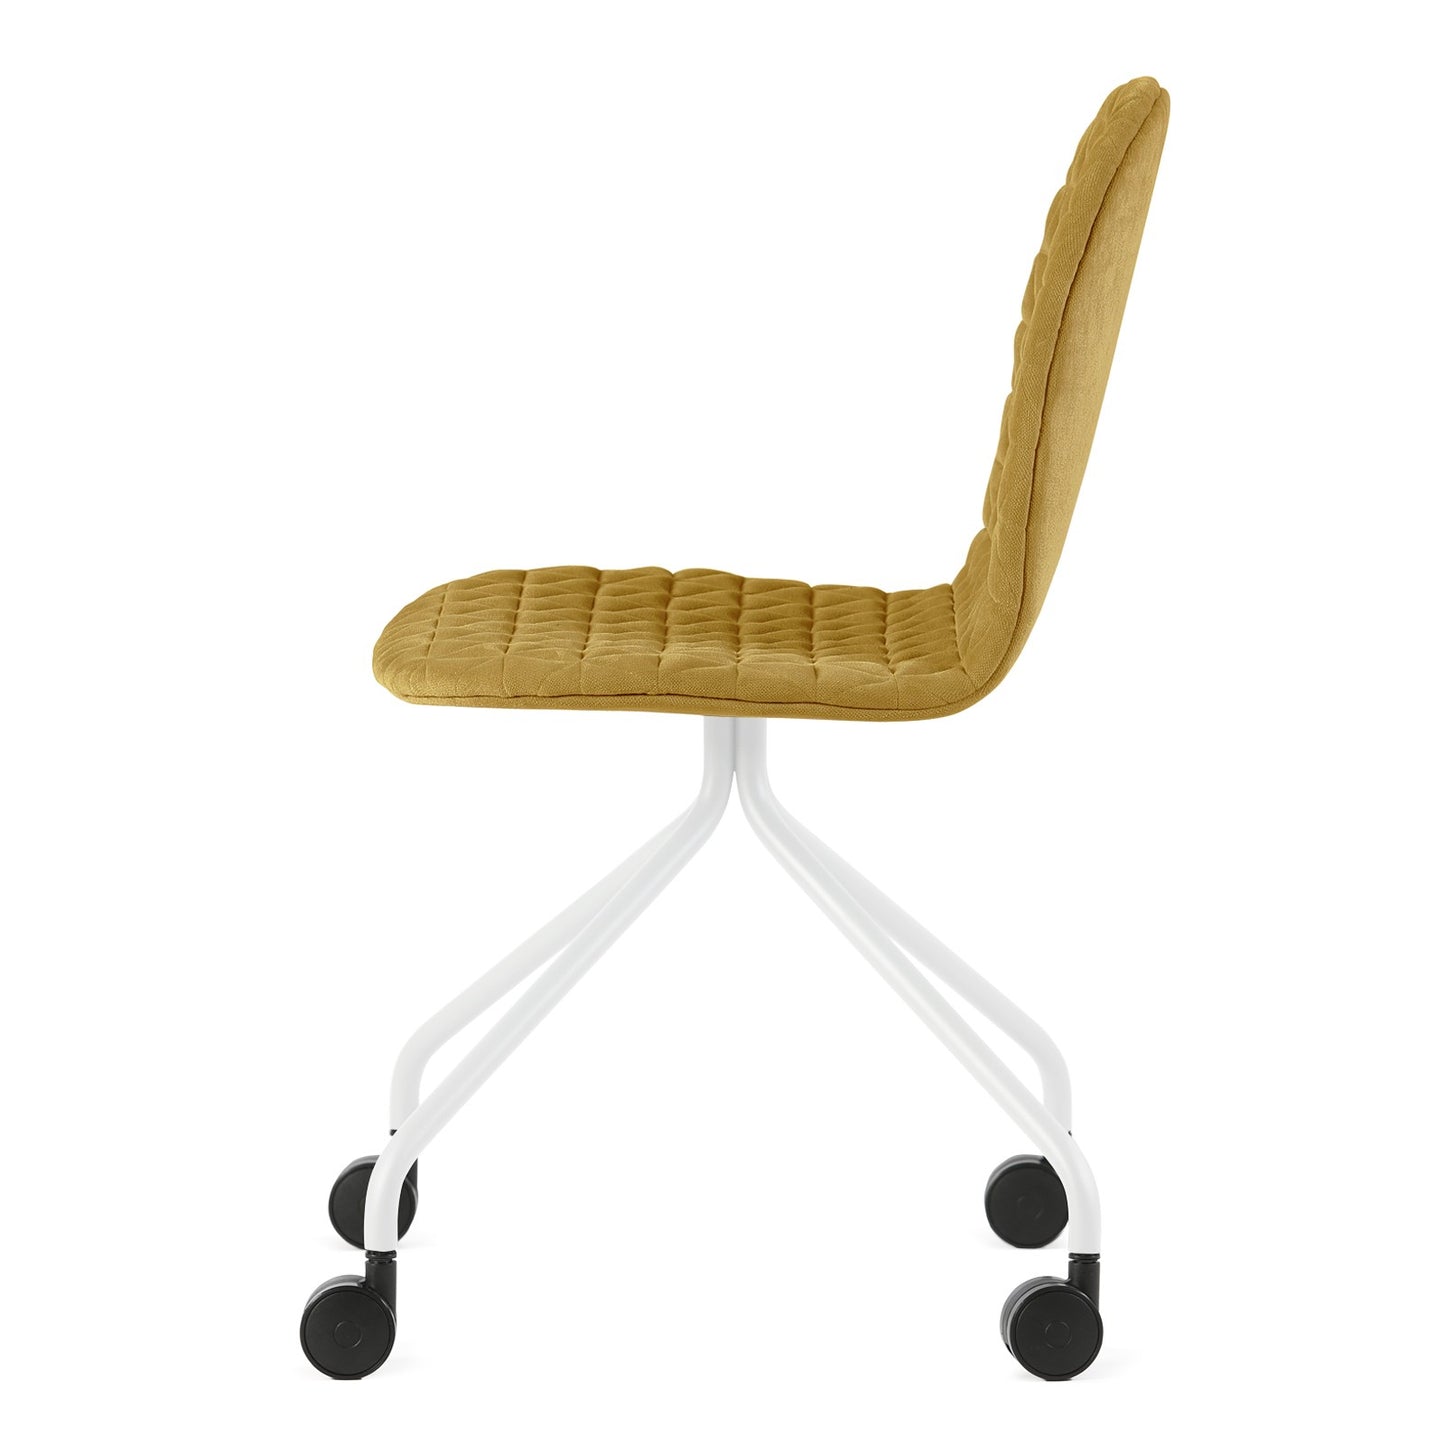 Chair Mannequin 04 - Mustard